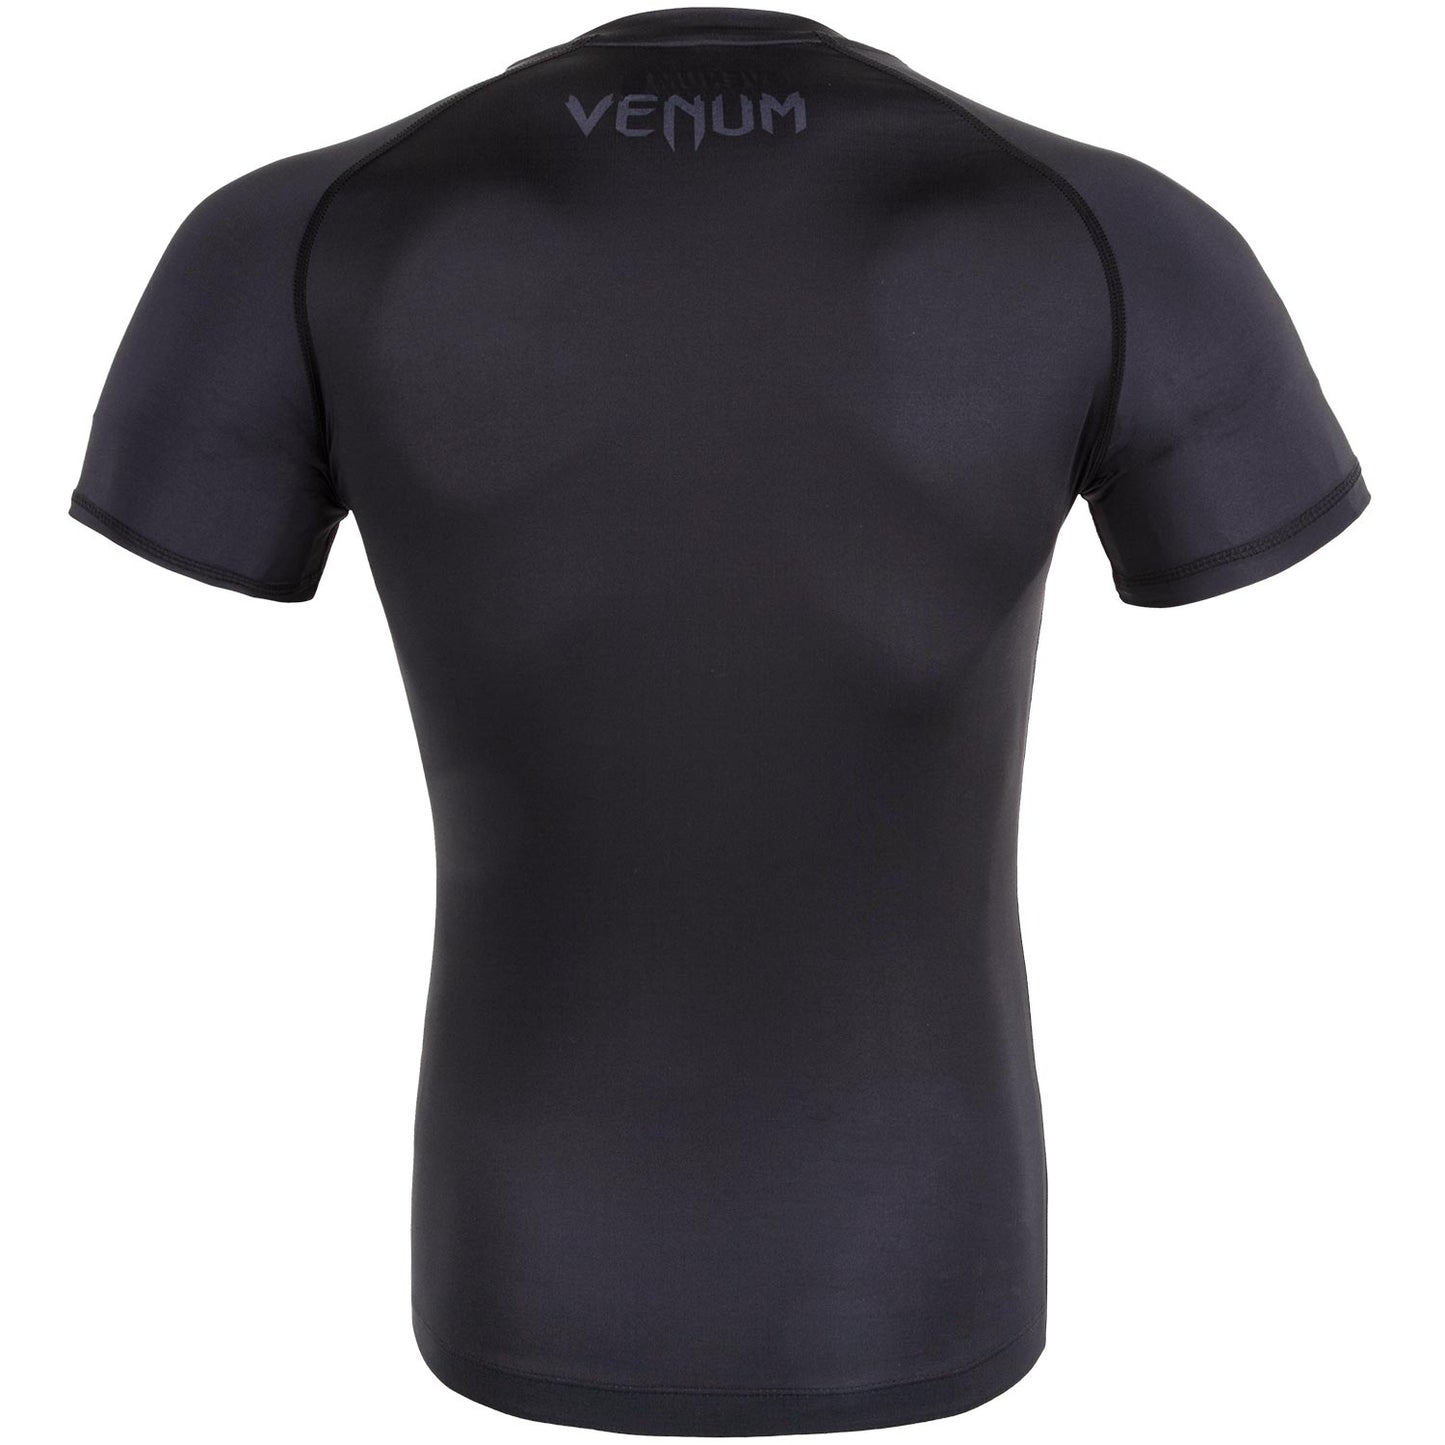 Camiseta de Compresión Venum Contender 3.0 - Mangas Cortas - Negro/Gris